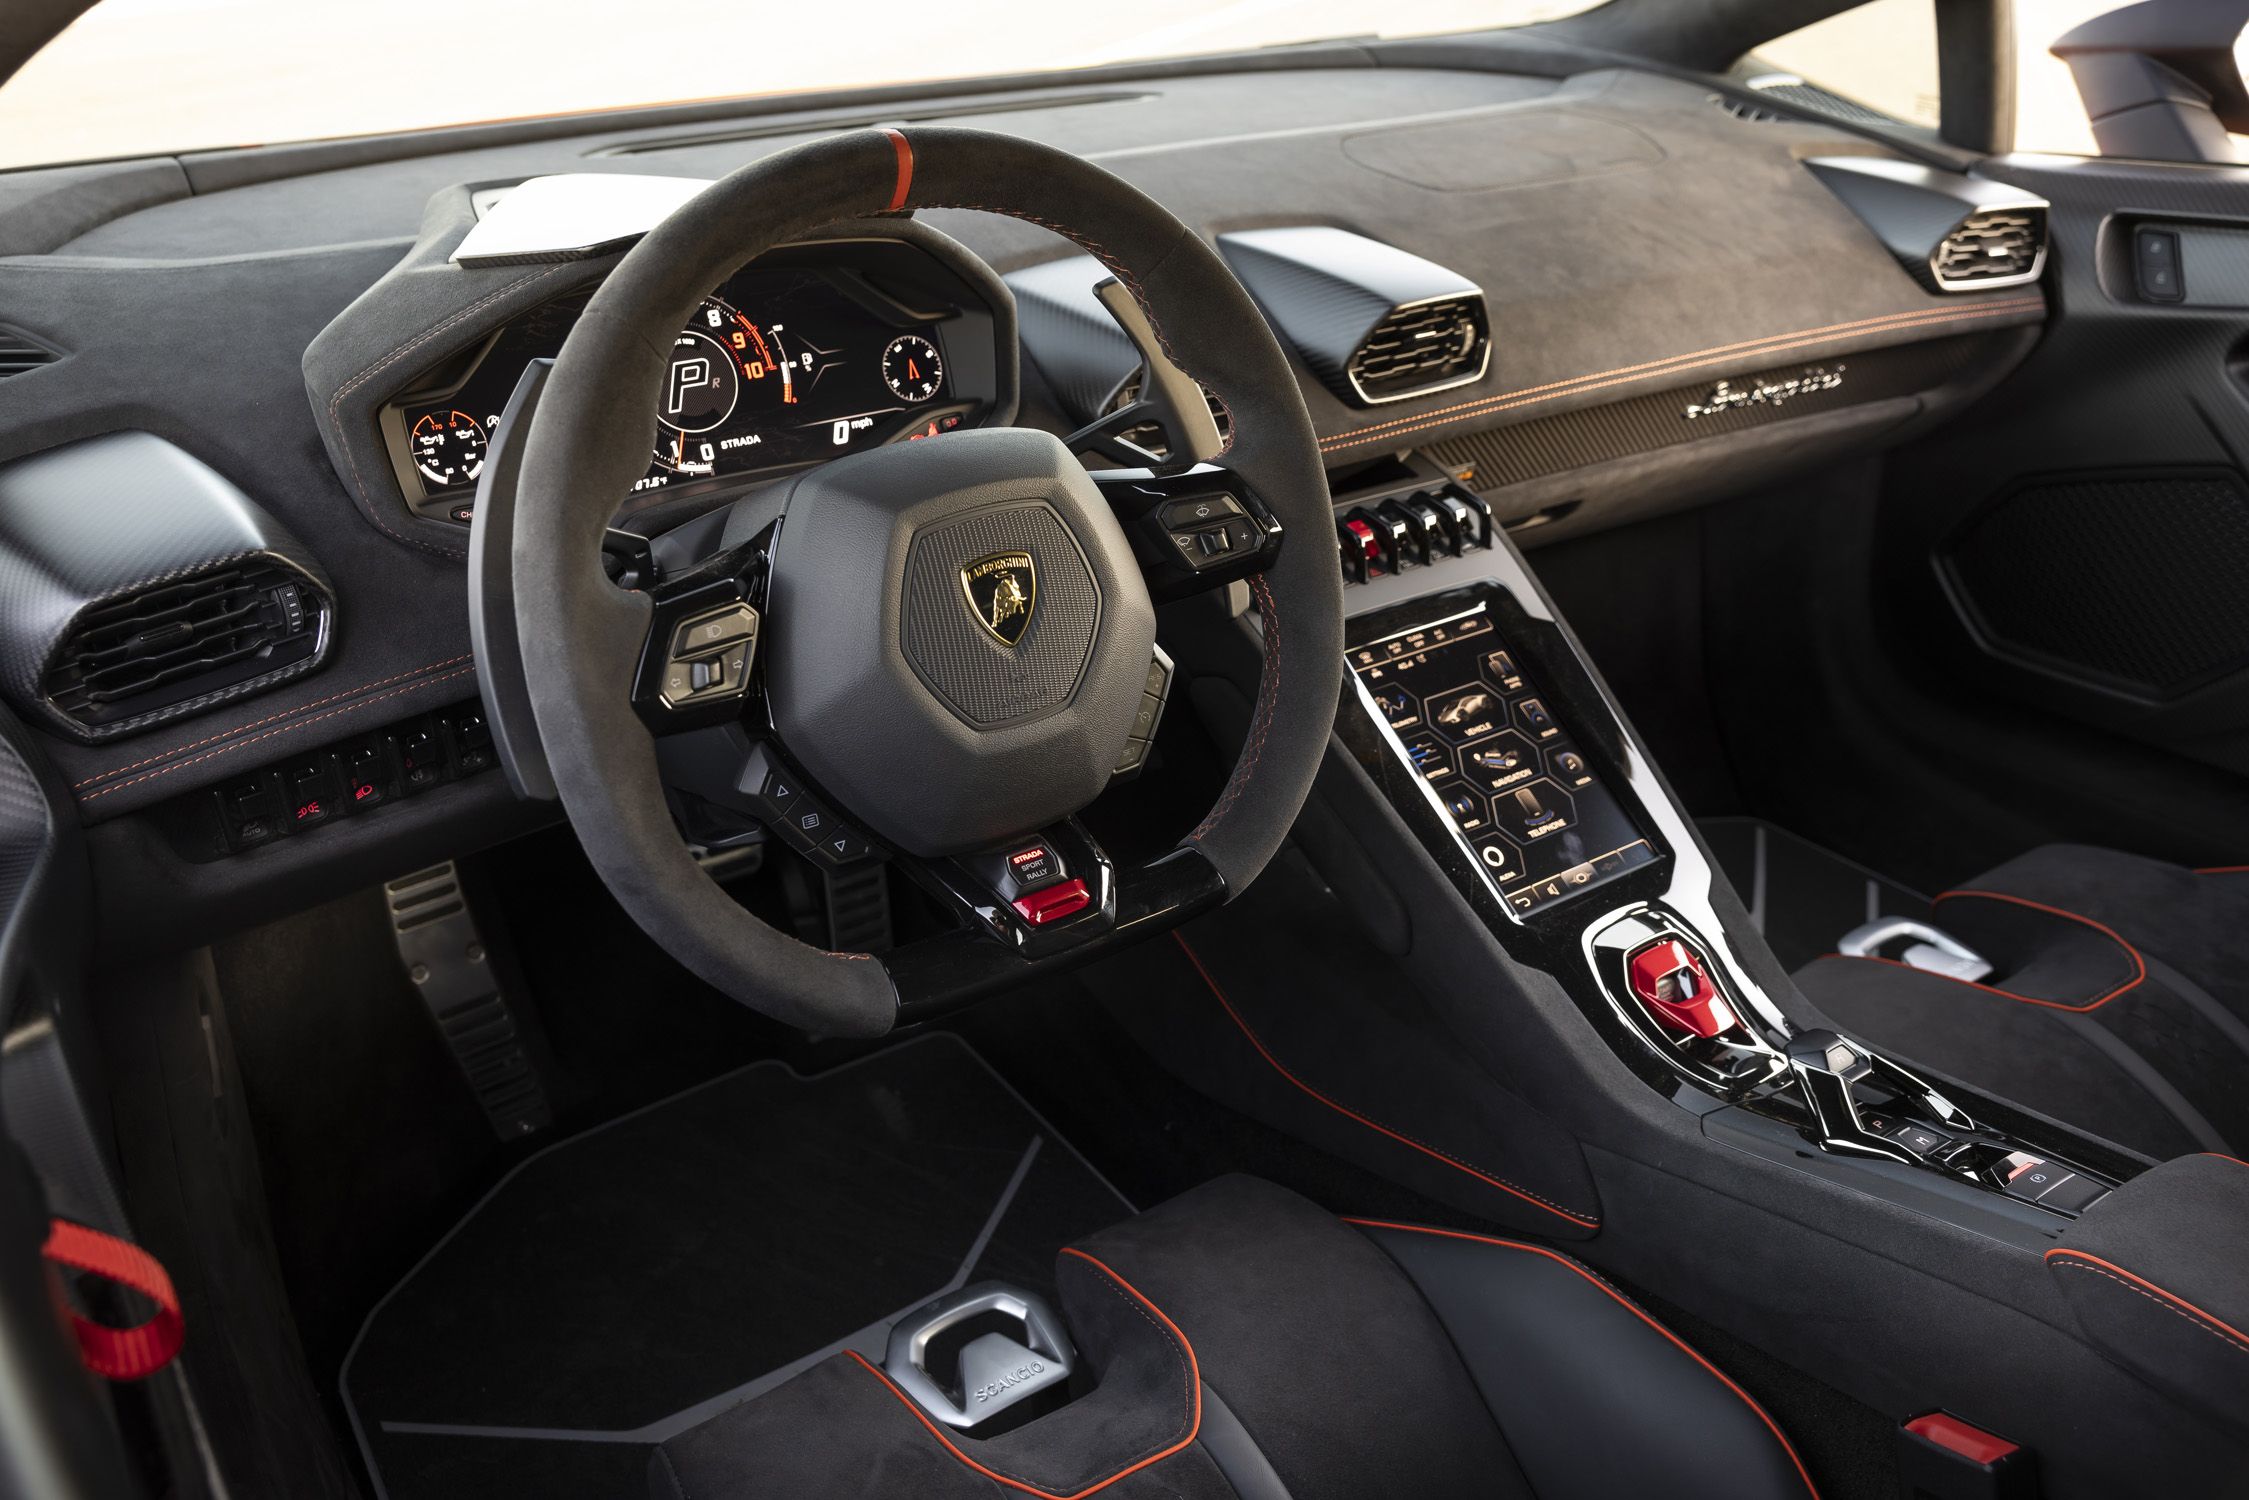 Forza Horizon 5 “High Performance” Preview: Huracan STO, Porsche